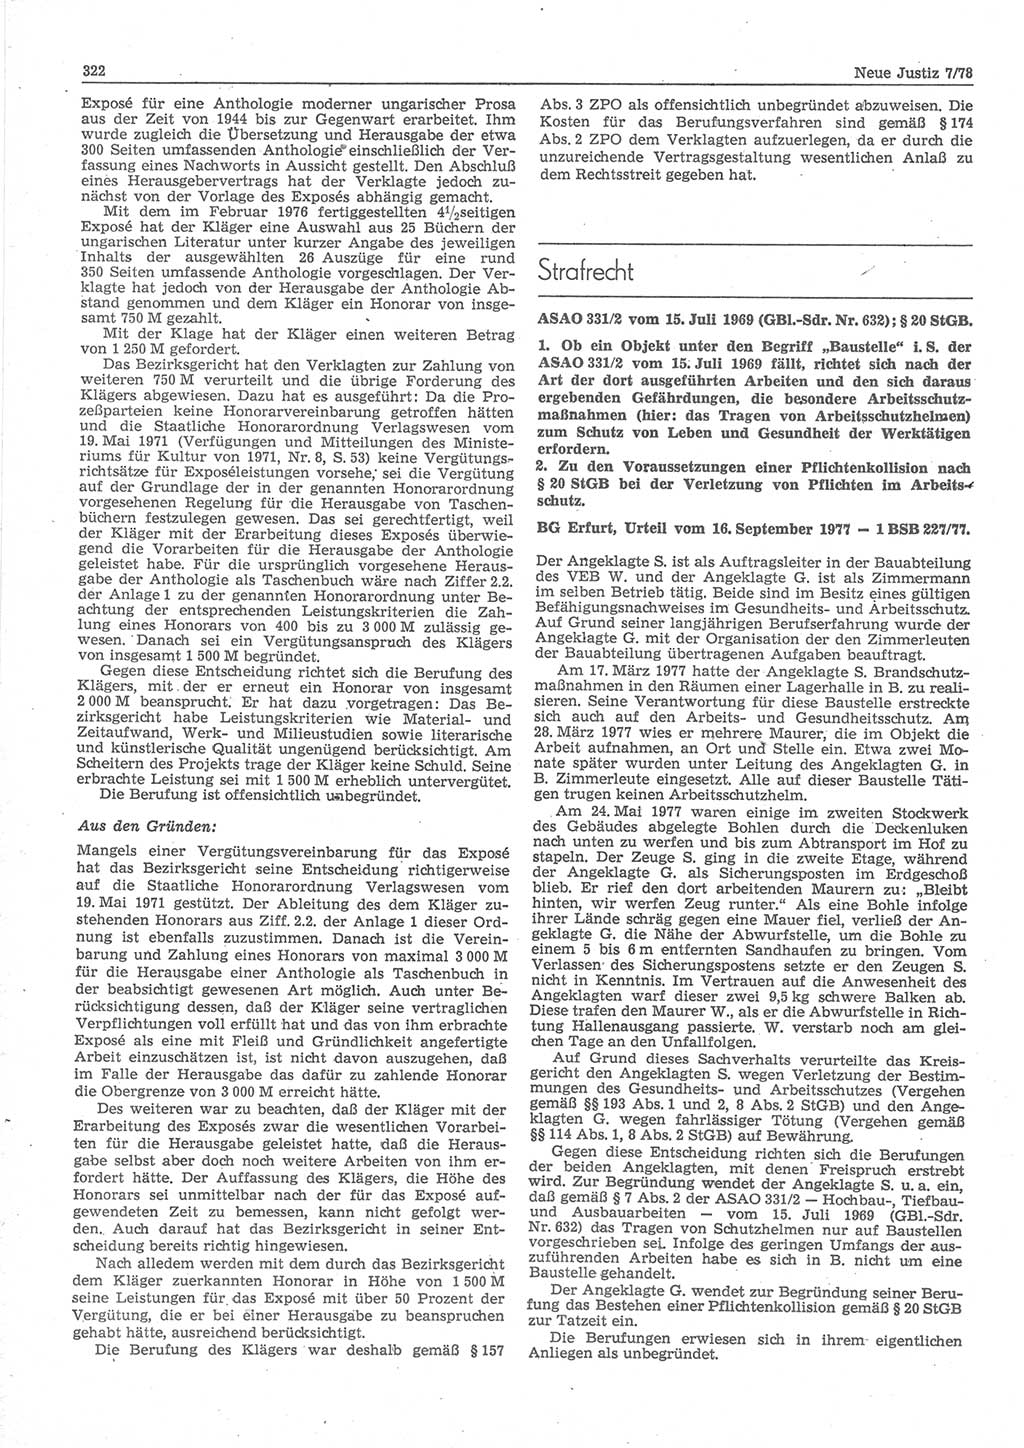 Neue Justiz (NJ), Zeitschrift für sozialistisches Recht und Gesetzlichkeit [Deutsche Demokratische Republik (DDR)], 32. Jahrgang 1978, Seite 322 (NJ DDR 1978, S. 322)